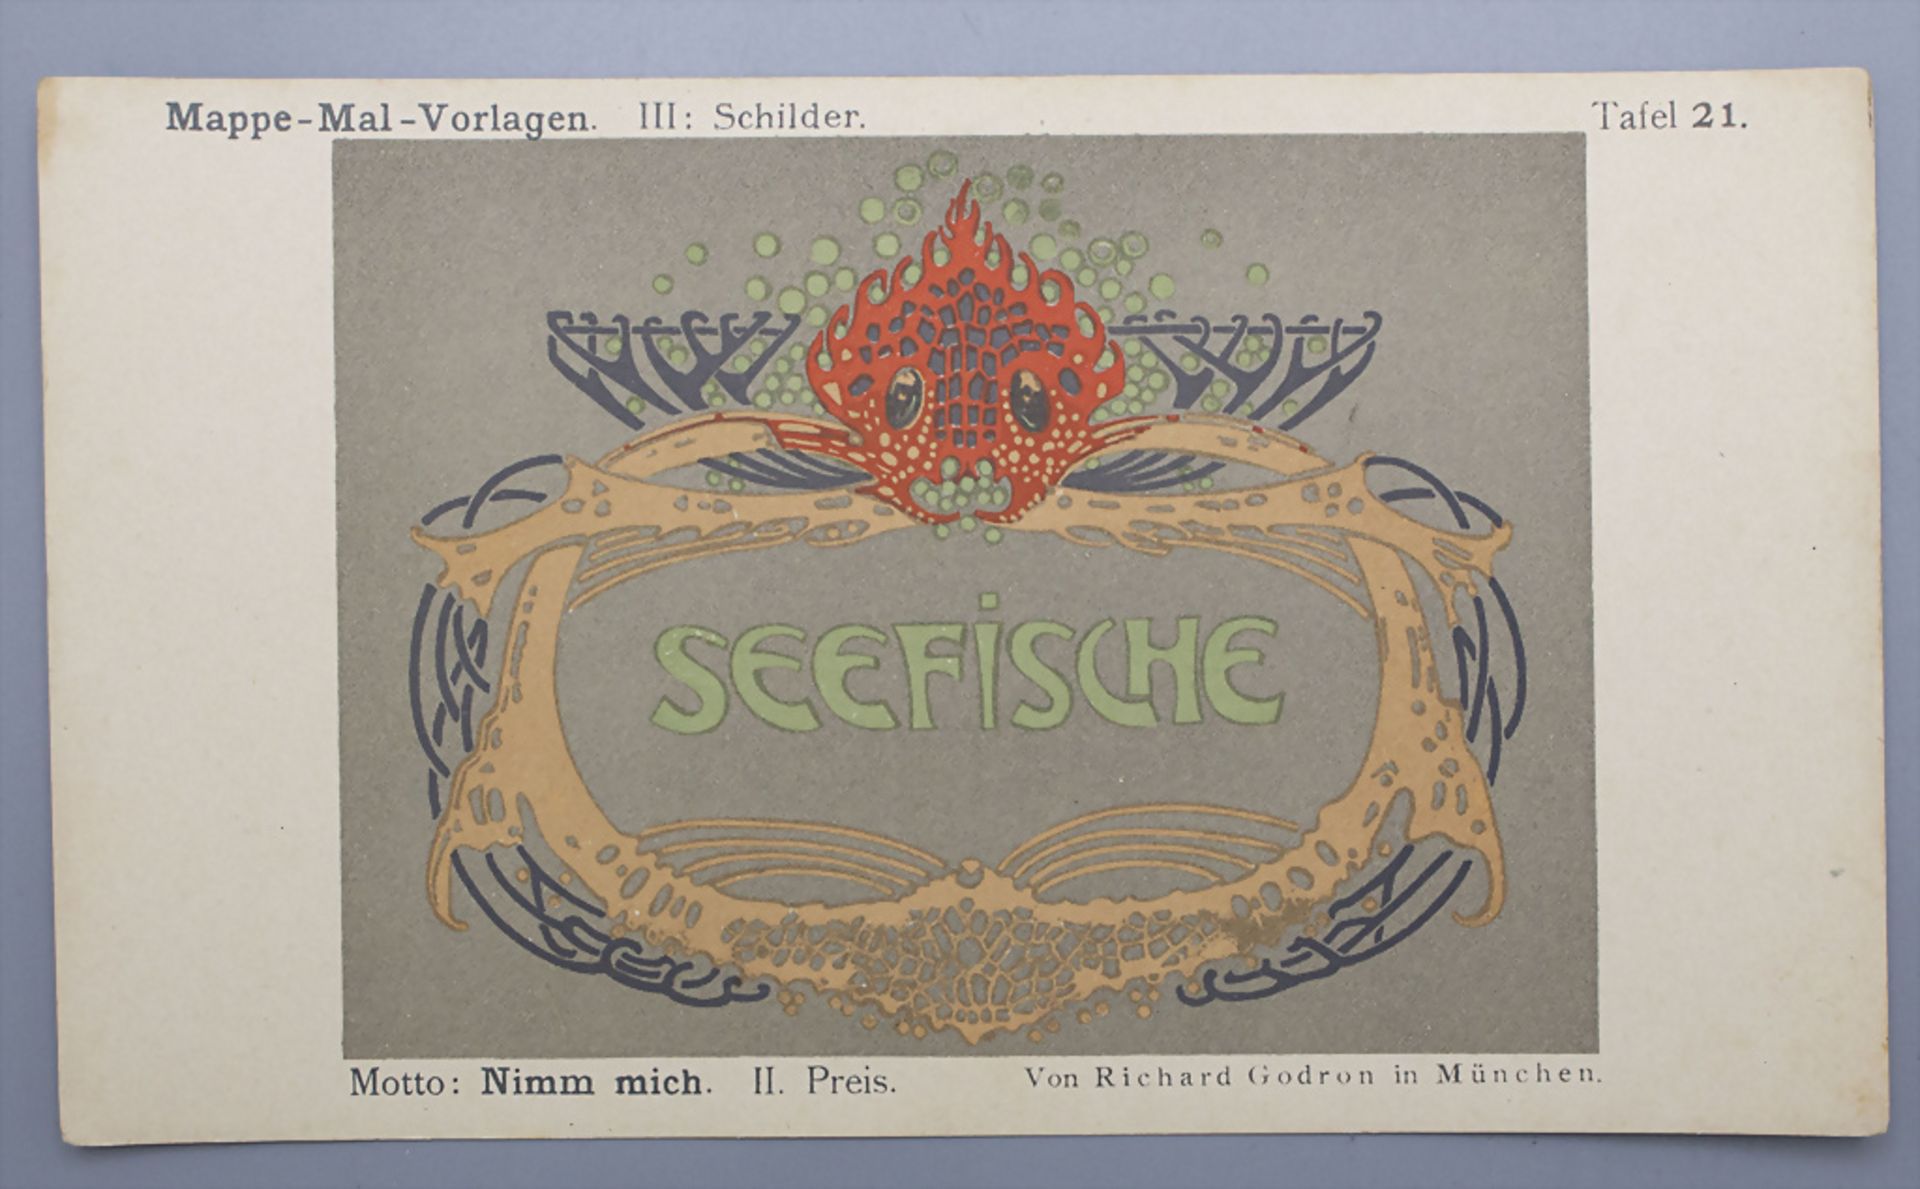 Jugendstil Mal-Vorlagen für Werbeschilder auf 36 Tafeln / 36 Art Nouveau pattern for ... - Bild 7 aus 9